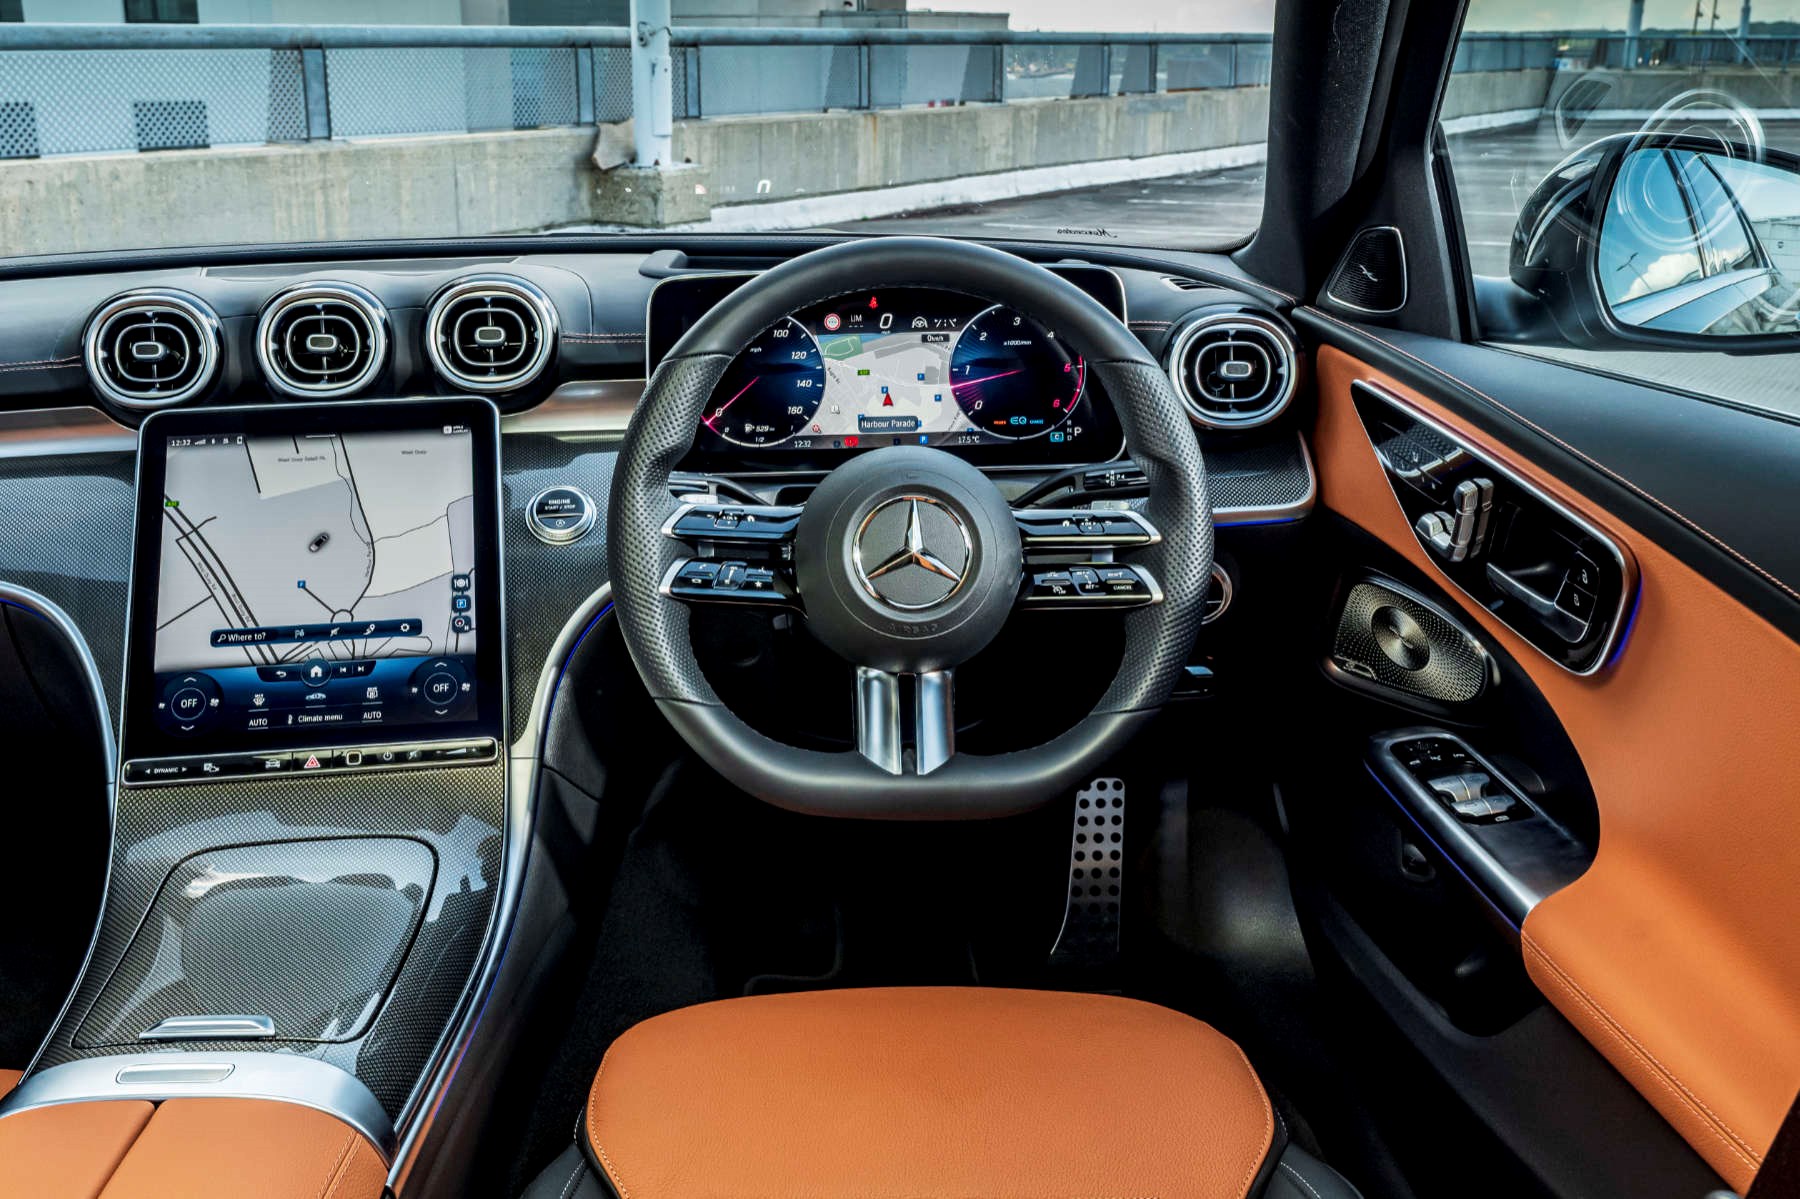 2021 Mercedes-Benz C-Class interior